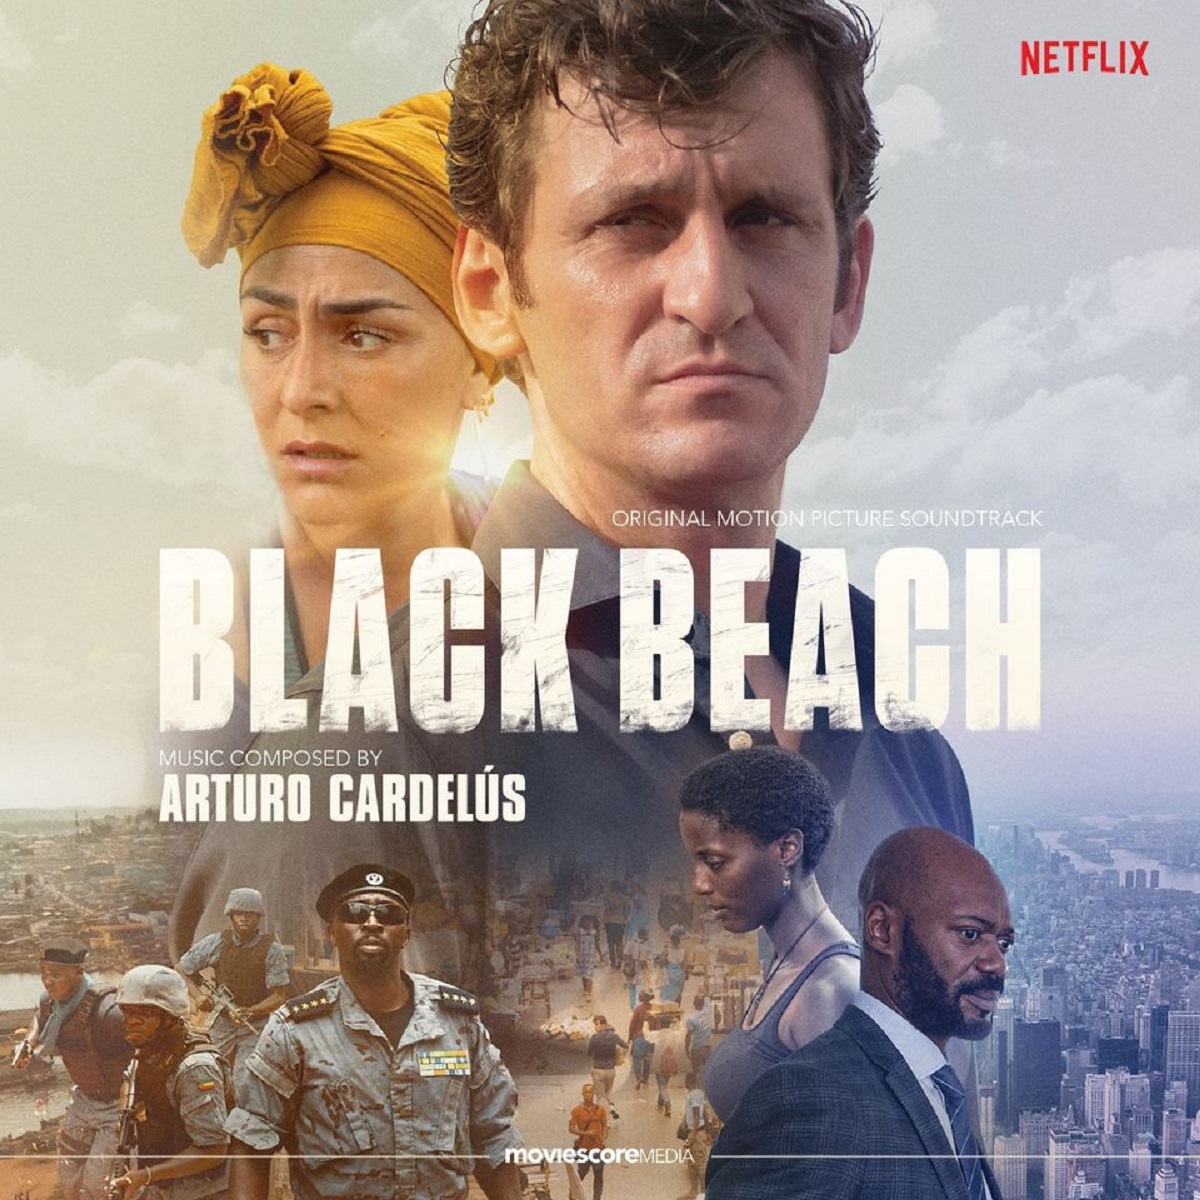 Black Beach il nuovo film spagnolo disponibile su Netflix Notizie.it